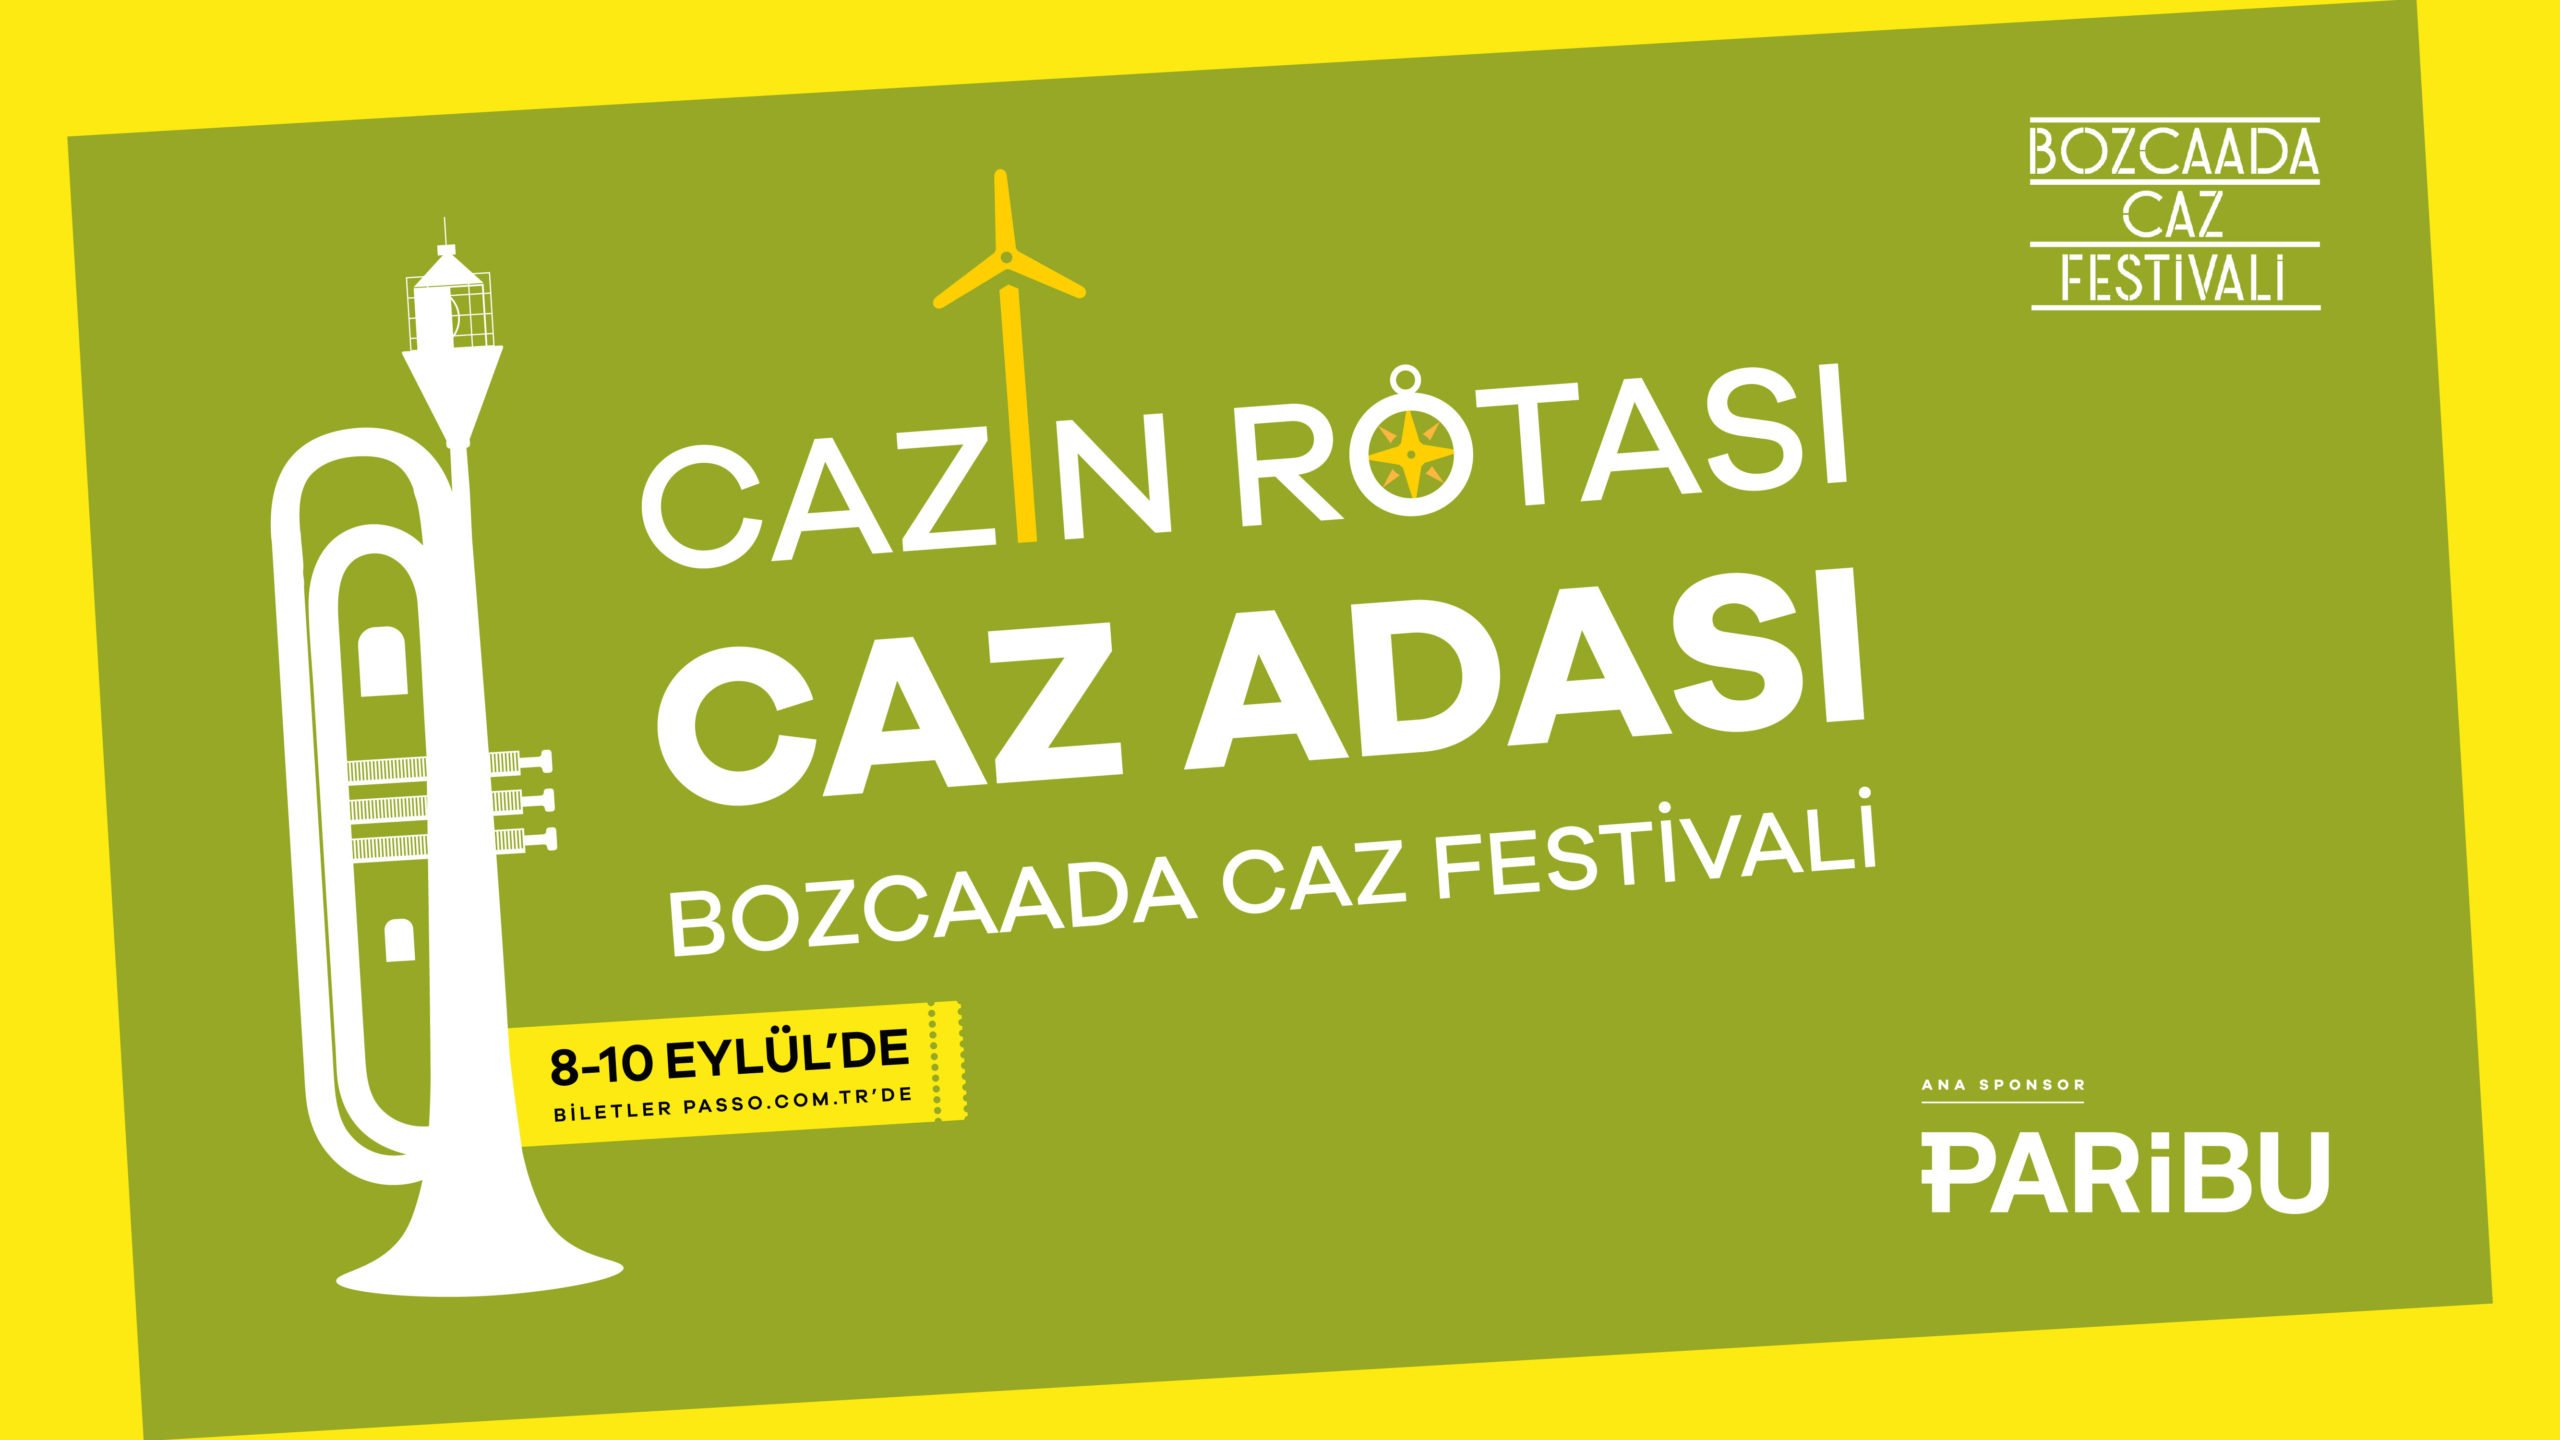 Bozcaada Caz Festivali, bu yıl da Paribu’nun ana sponsorluğunda gerçekleşecek